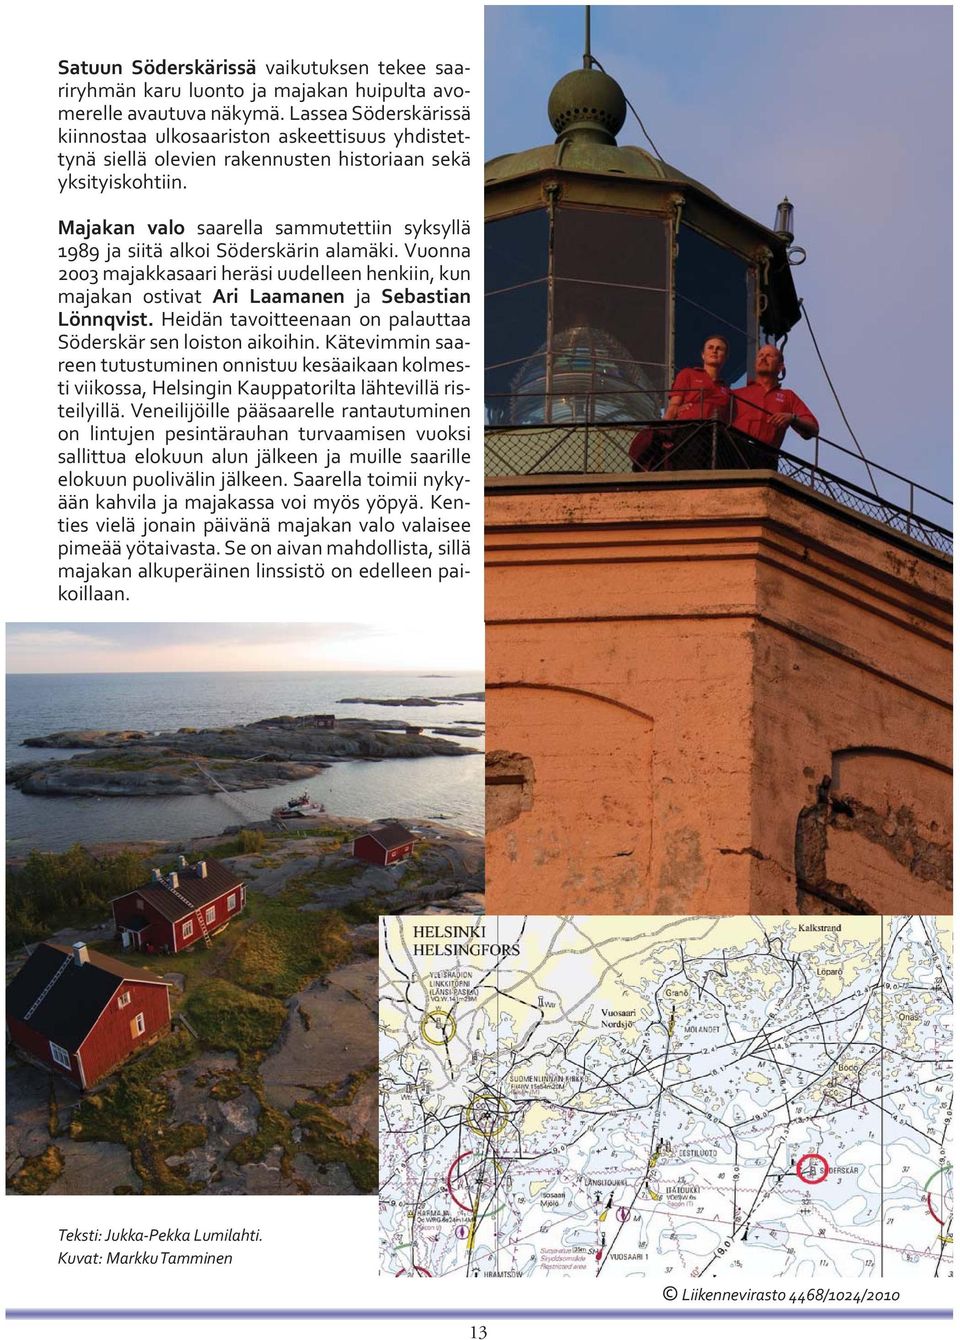 Majakan valo saarella sammutettiin syksyllä 1989 ja siitä alkoi Söderskärin alamäki. Vuonna 2003 majakkasaari heräsi uudelleen henkiin, kun majakan ostivat Ari Laamanen ja Sebastian Lönnqvist.